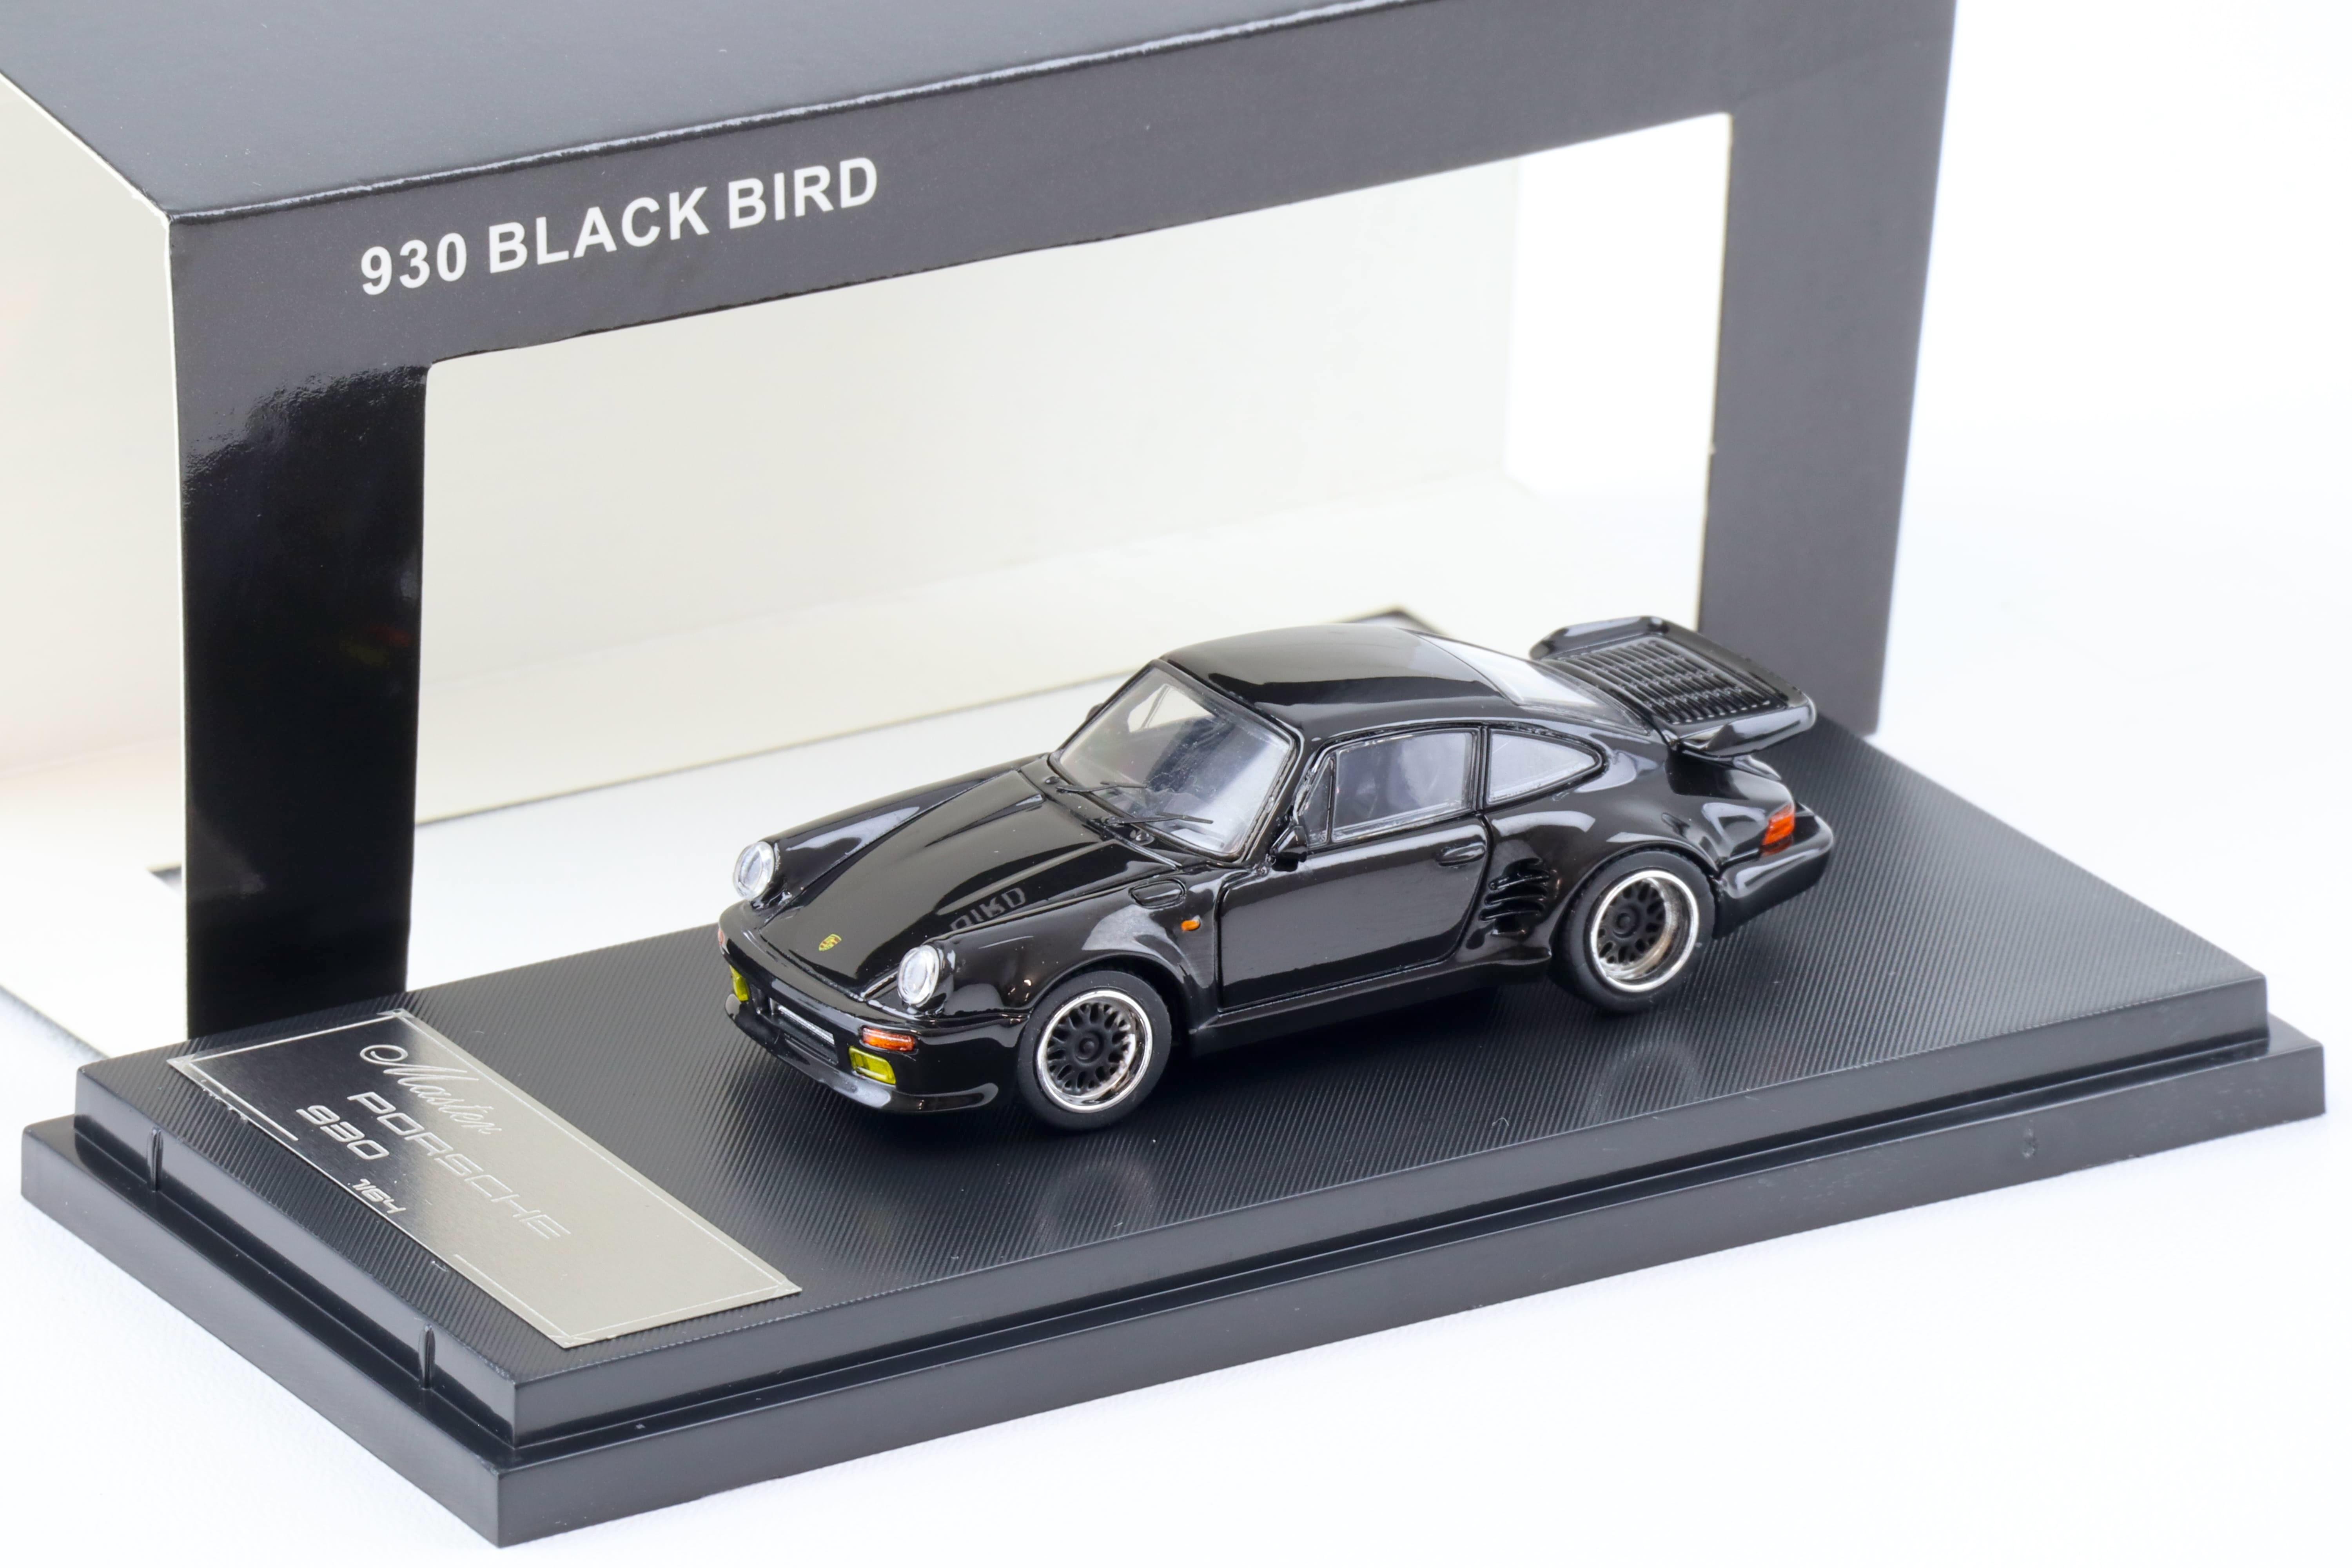 1:64 Master Porsche 911 930 Turbo Black Bird Midnight black Diecast